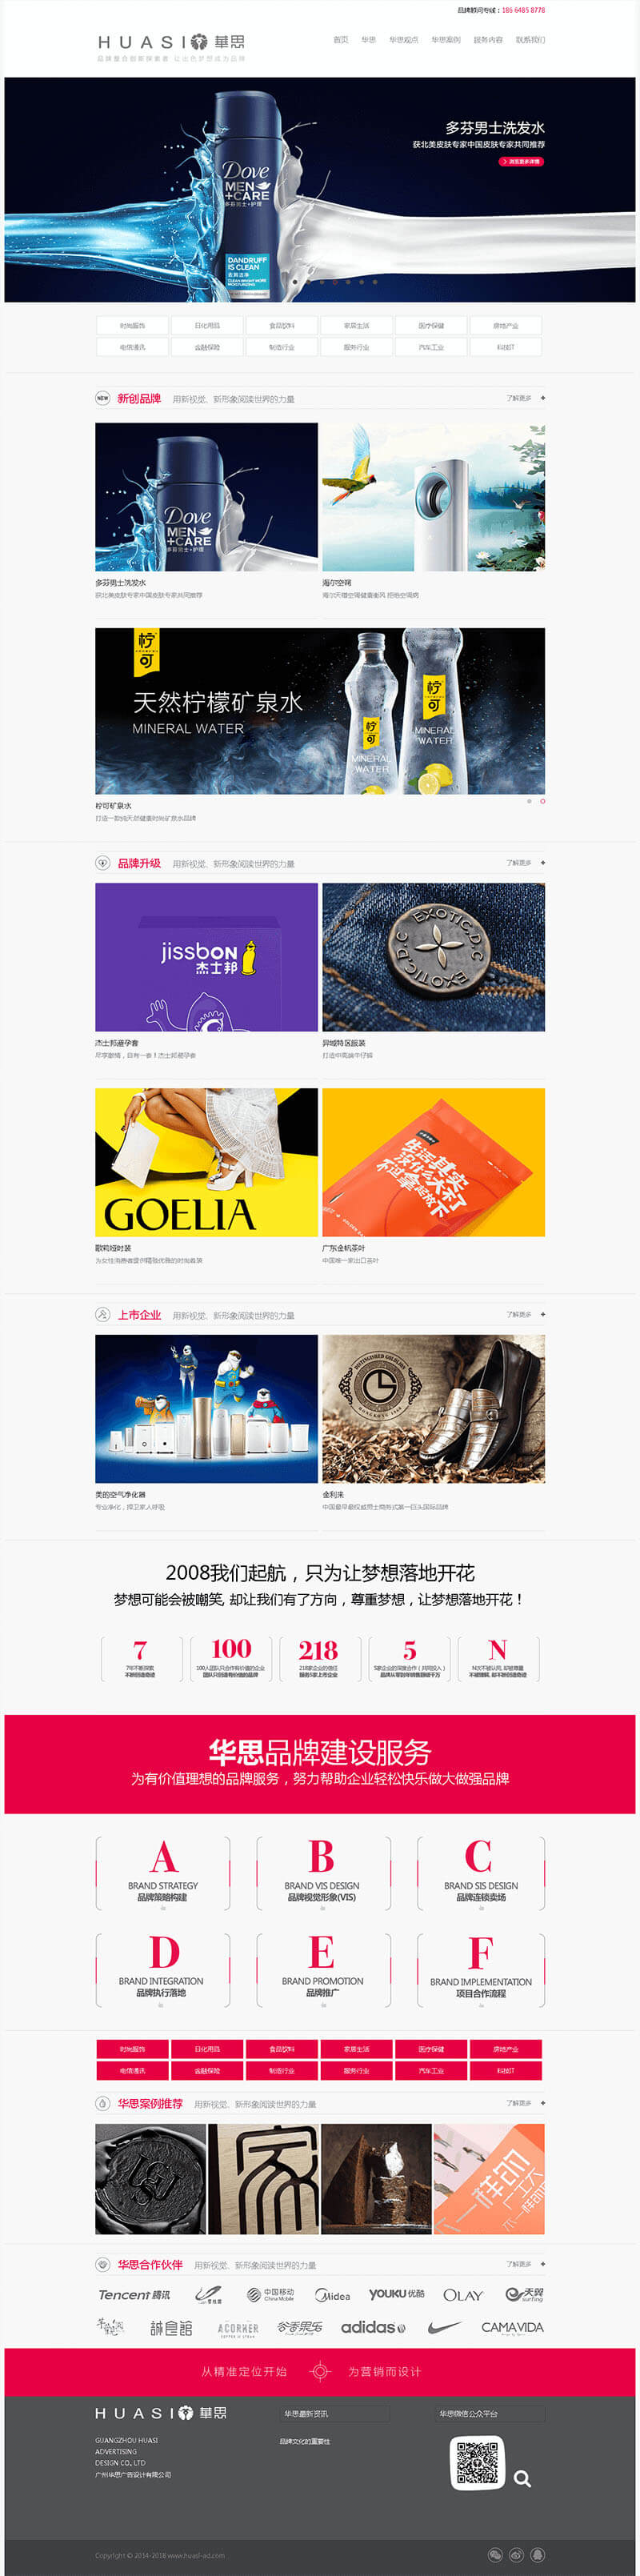 【案例】广州华思广告设计有限公司